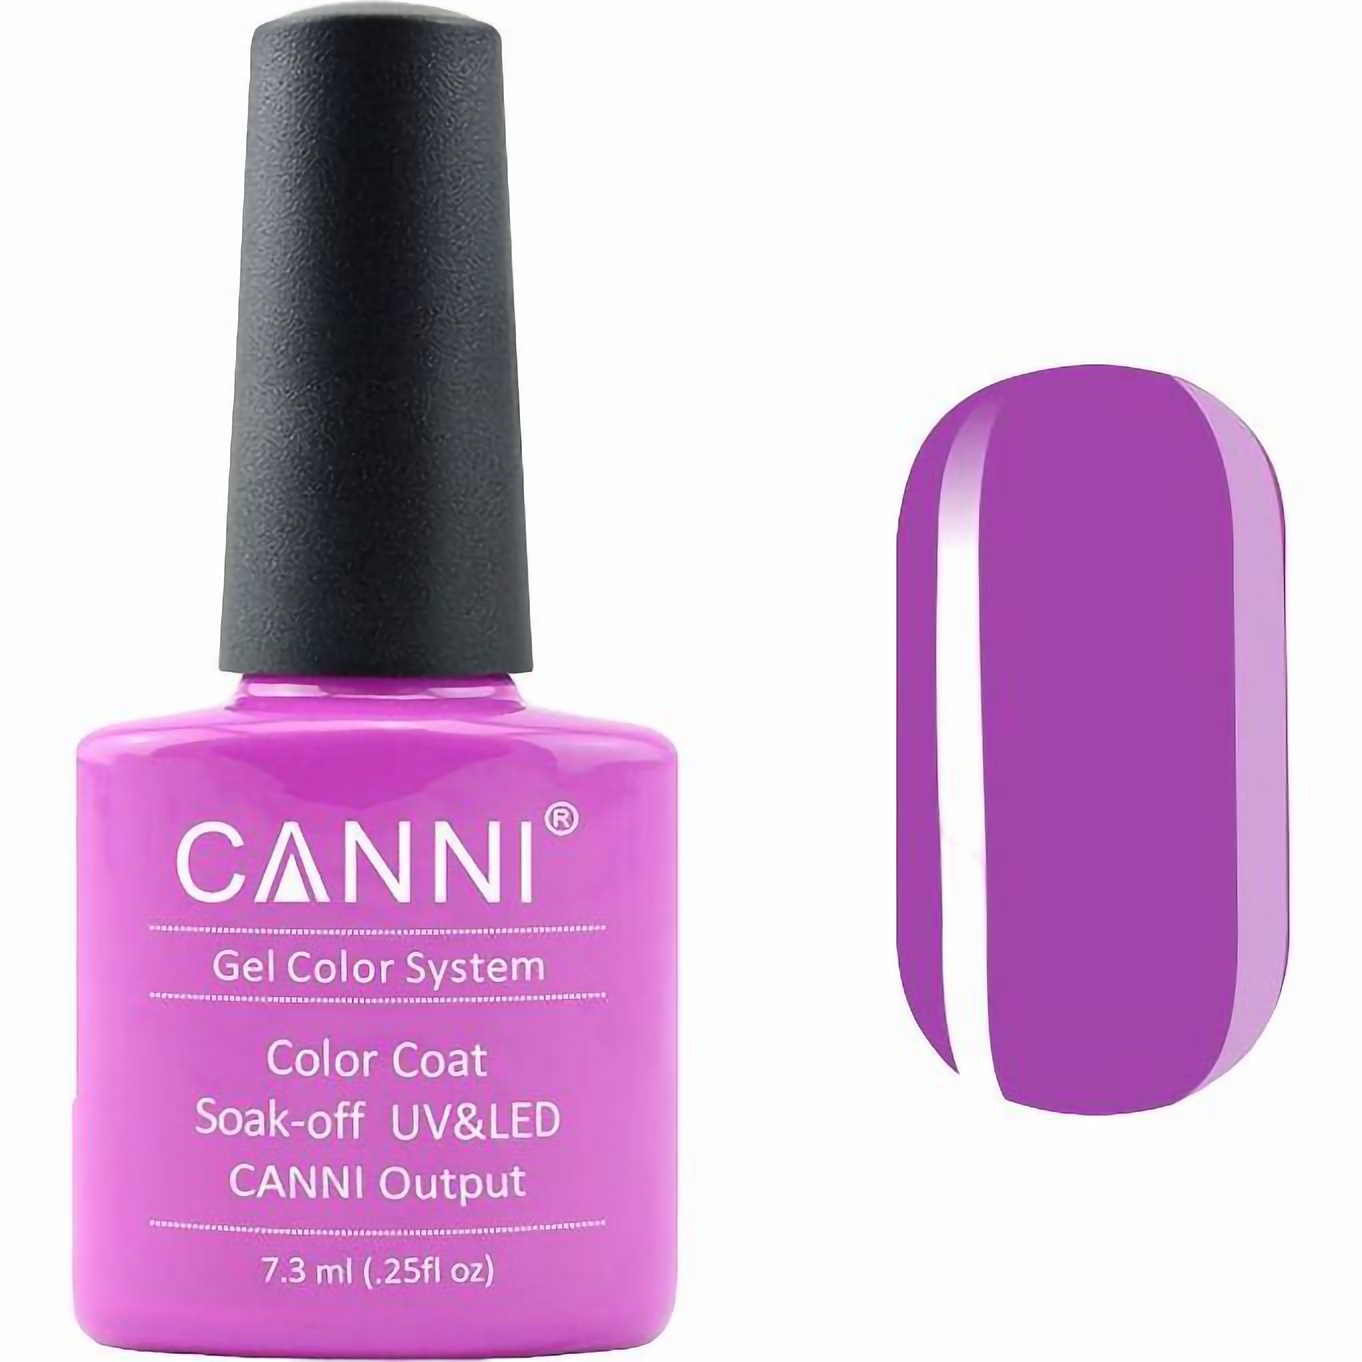 Гель-лак Canni Color Coat Soak-off UV&LED 88 ярко-сиреневый 7.3 мл - фото 1